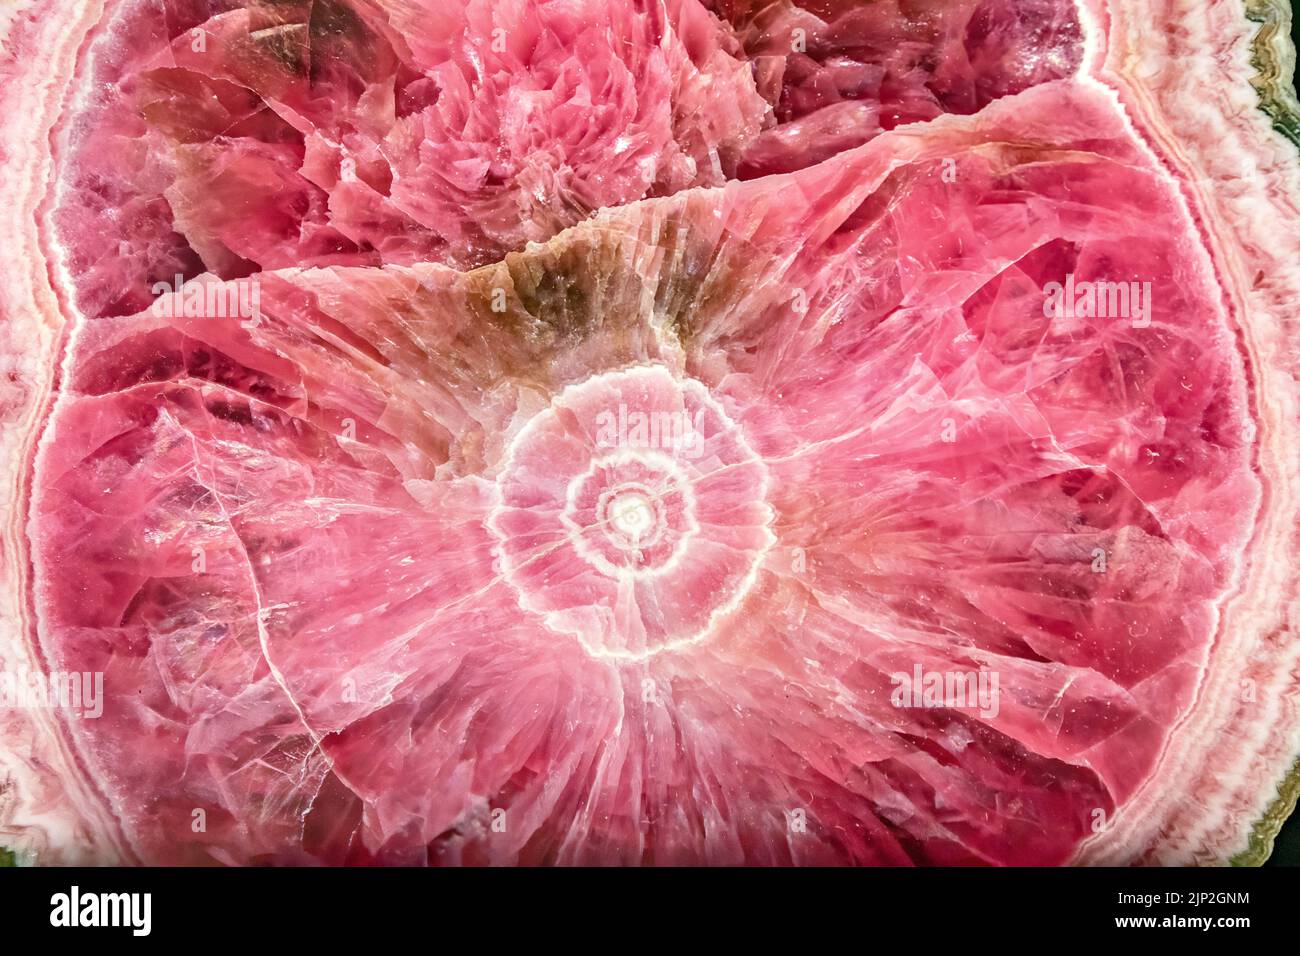 Eine Nahaufnahme eines großen rosa Quarzkristalles mit hellen Lichtern, die ihn erhellen Stockfoto